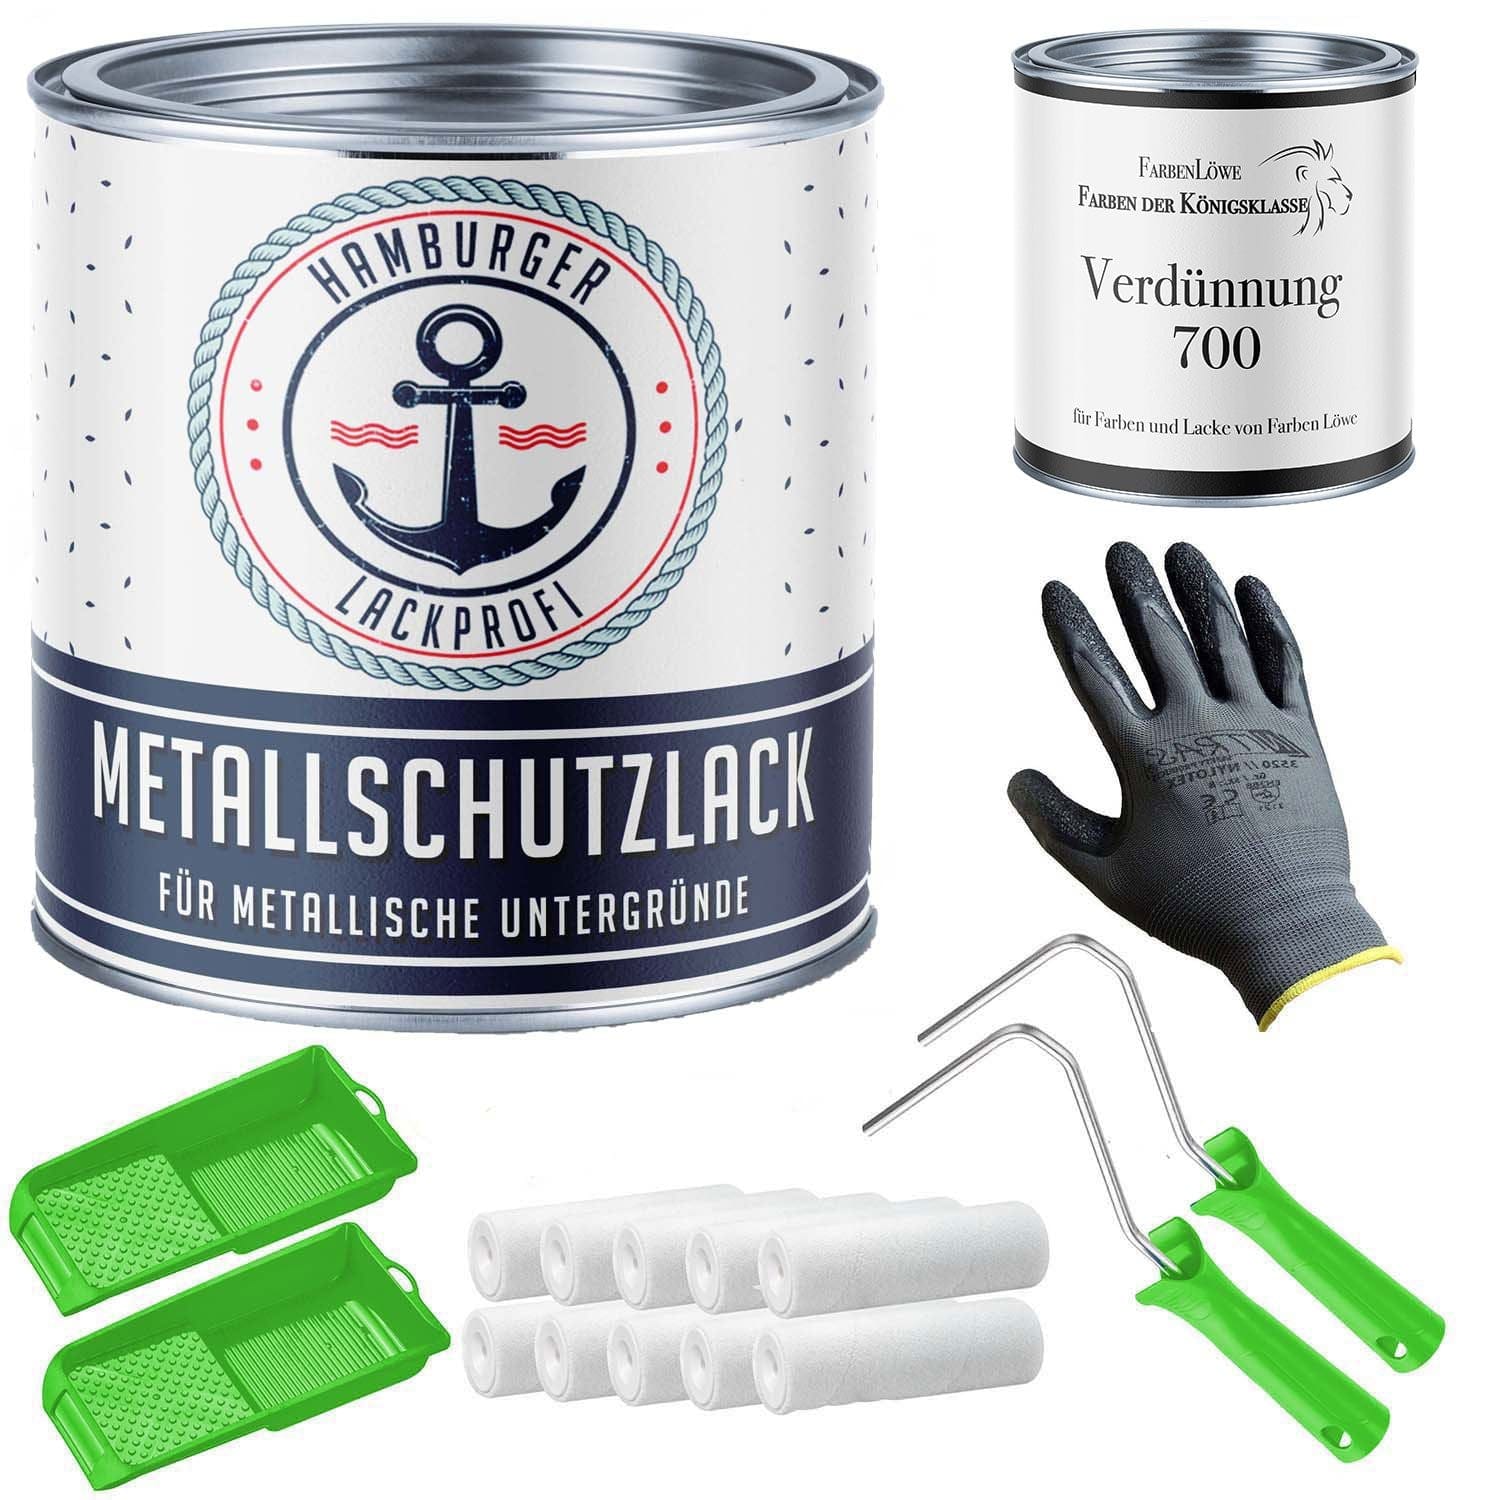 FARBENLÖWE Lacke & Beschichtungen Hamburger Lack-Profi Metallschutzlack in Zitronengelb RAL 1012 mit Lackierset (X300) & Verdünnung (1 L) - 30% Sparangebot